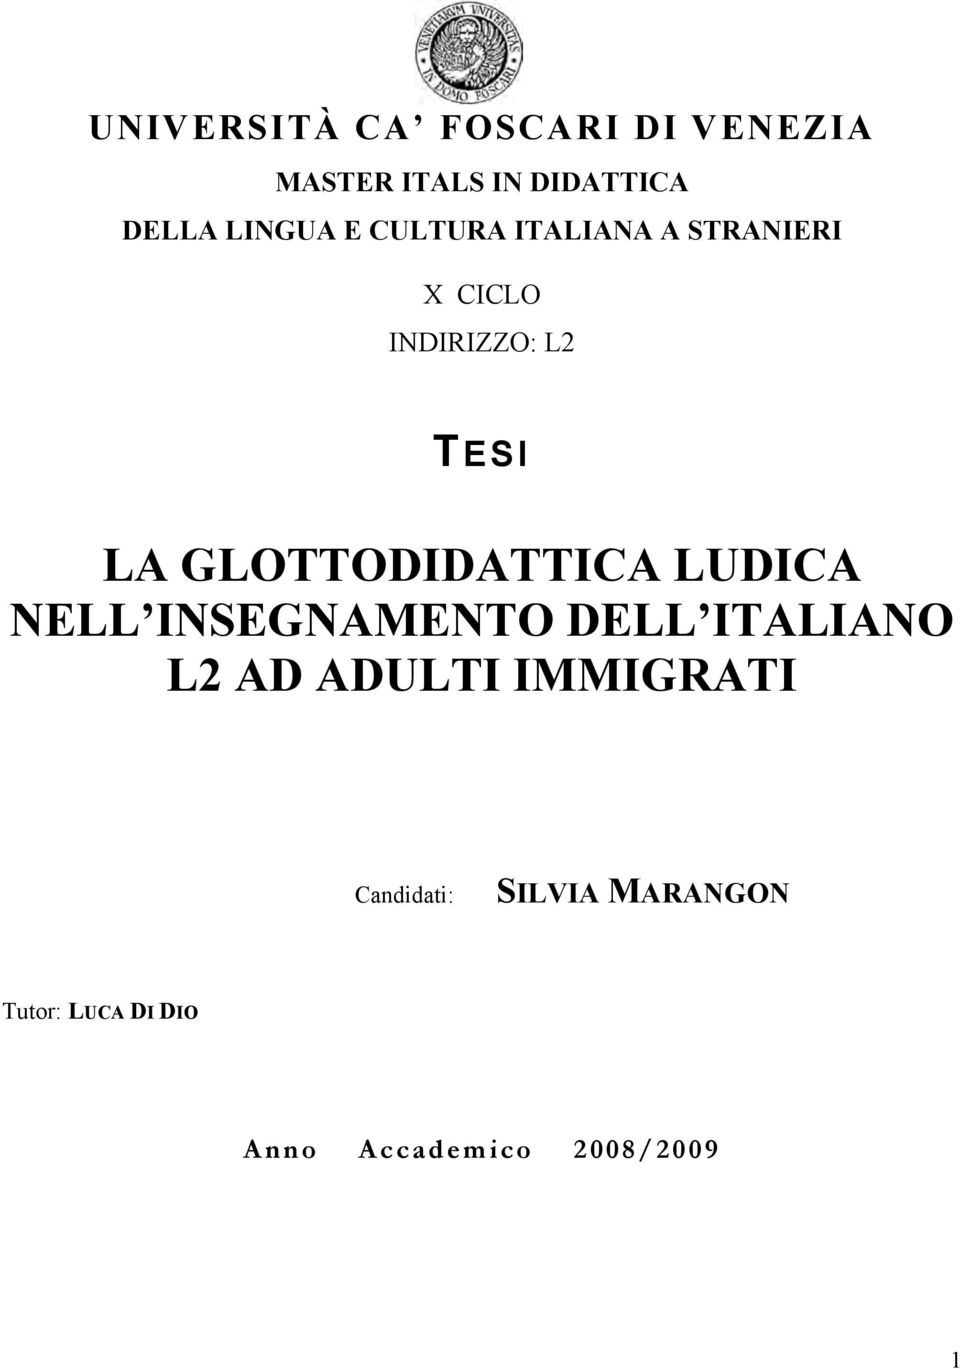 GLOTTODIDATTICA LUDICA NELL INSEGNAMENTO DELL ITALIANO L2 AD ADULTI